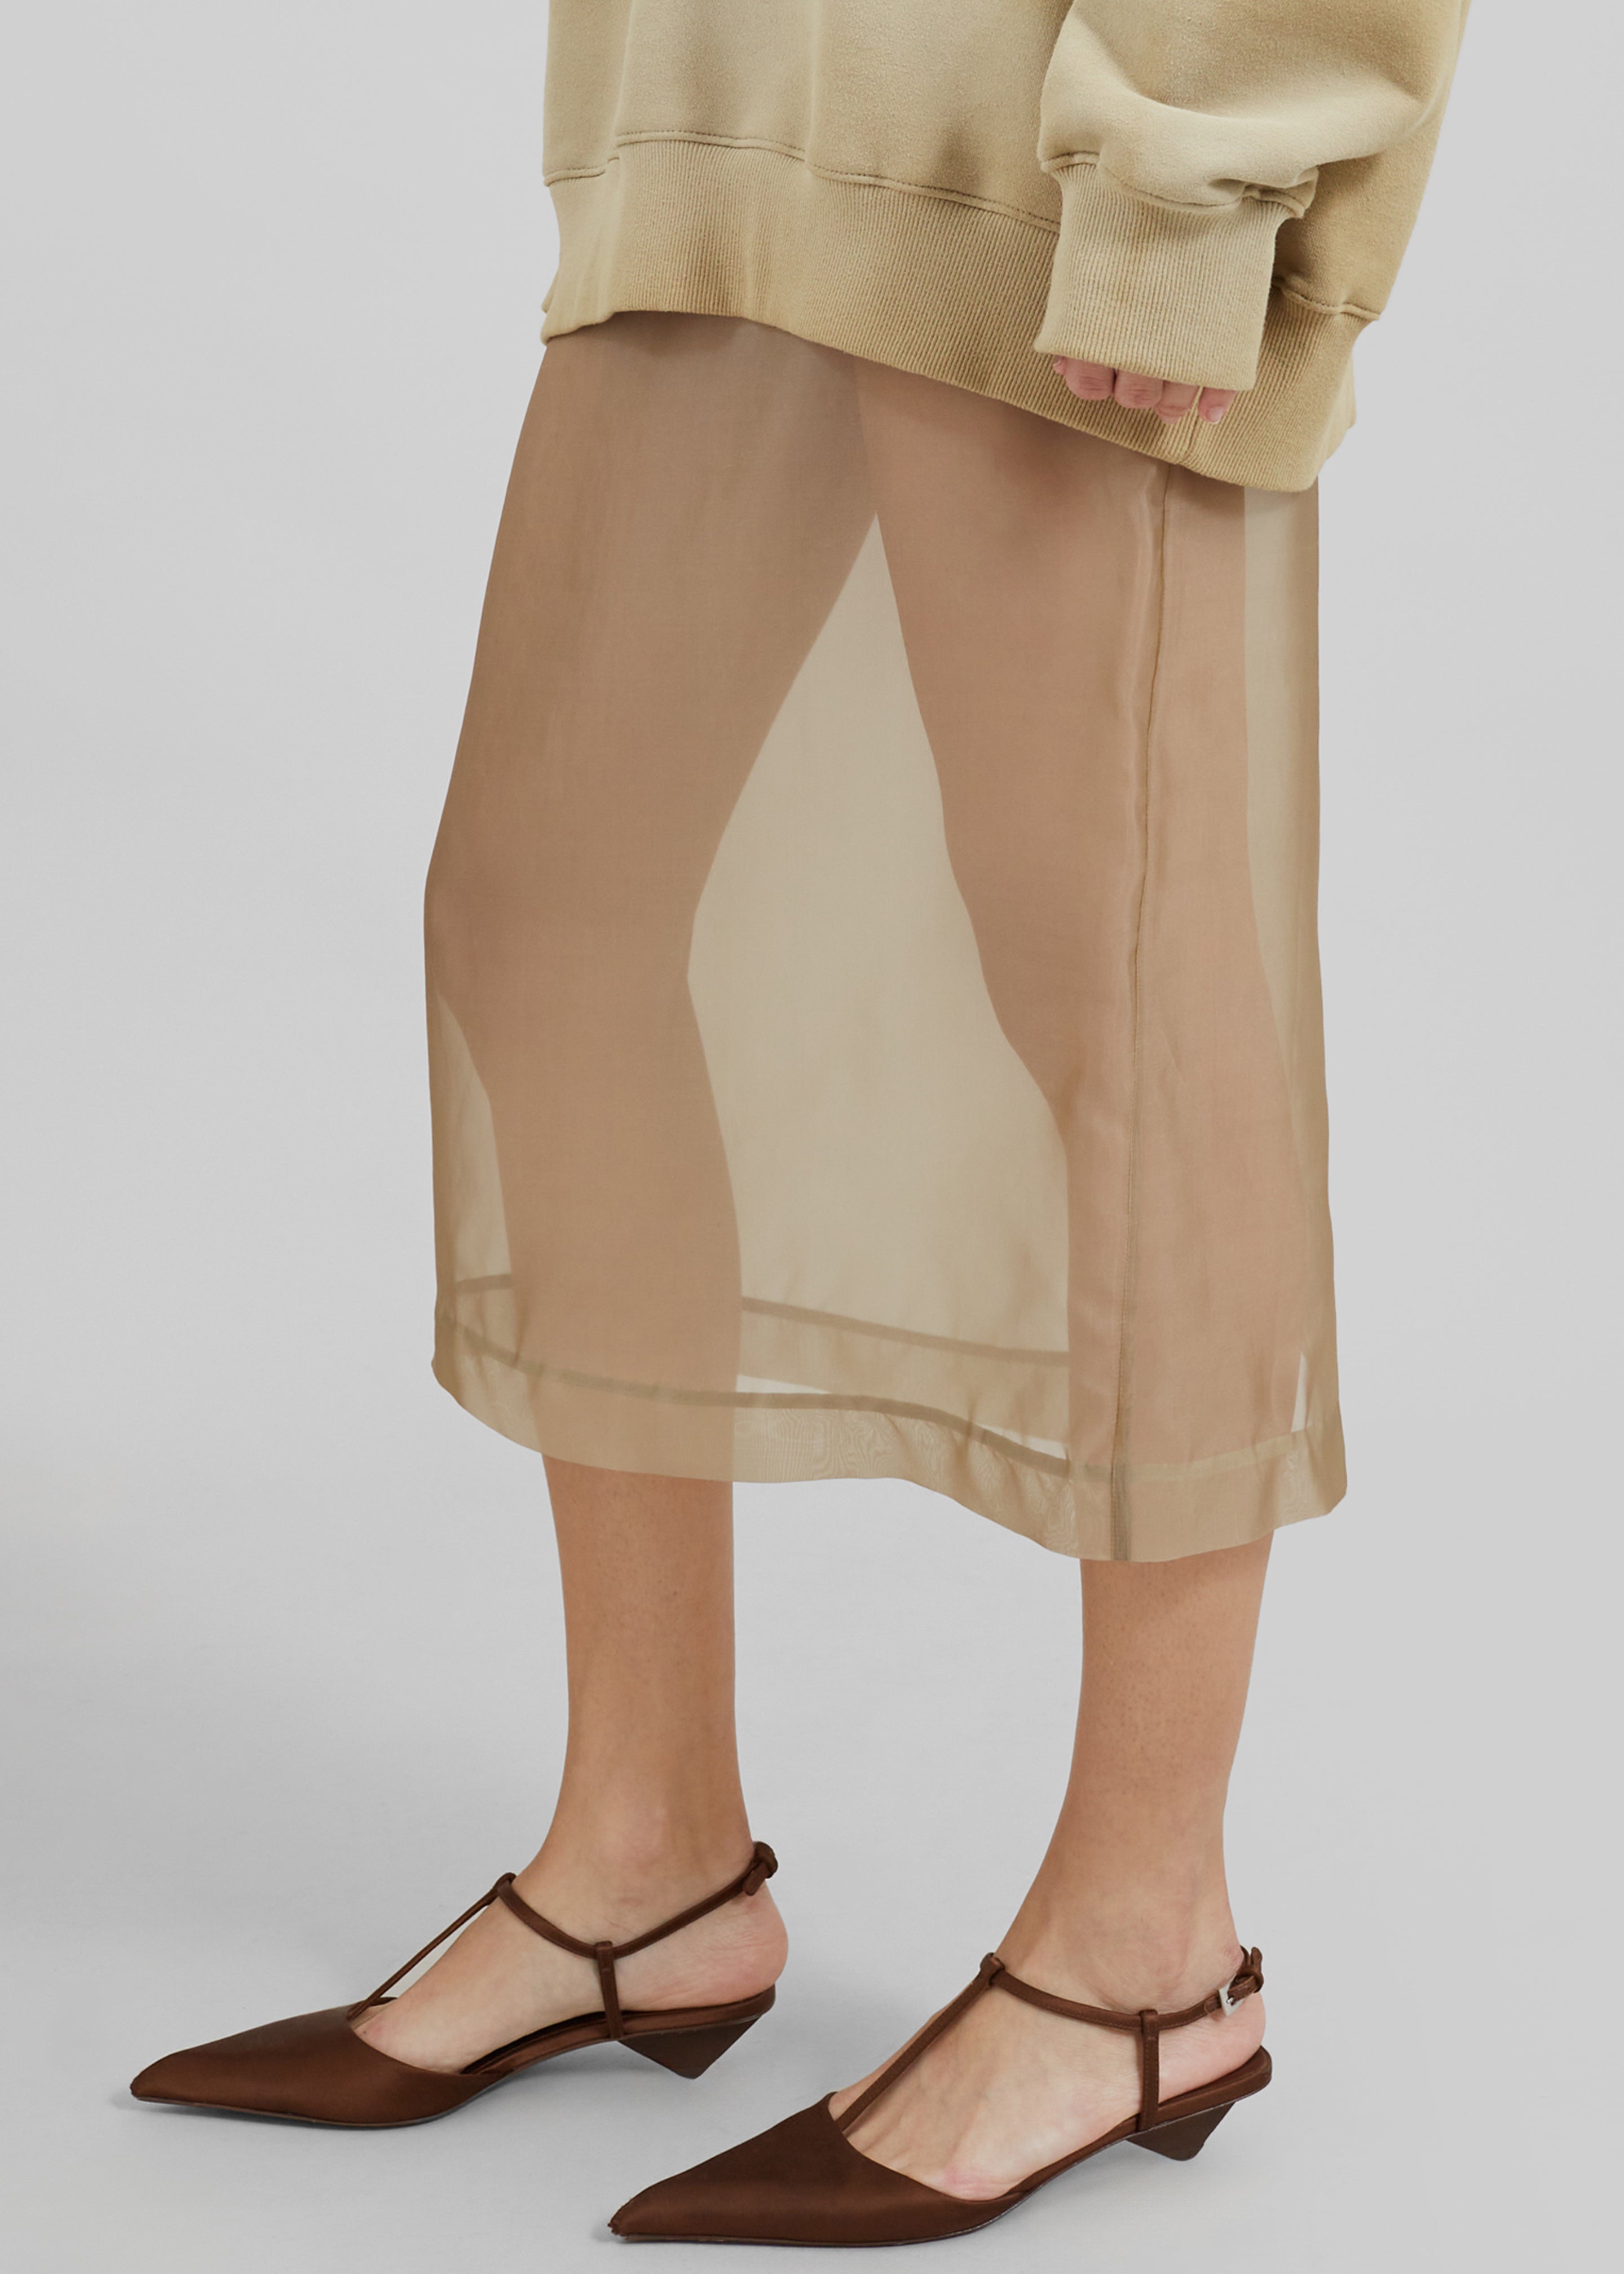 Peri Sheer Midi Skirt - Desert Sand - 3